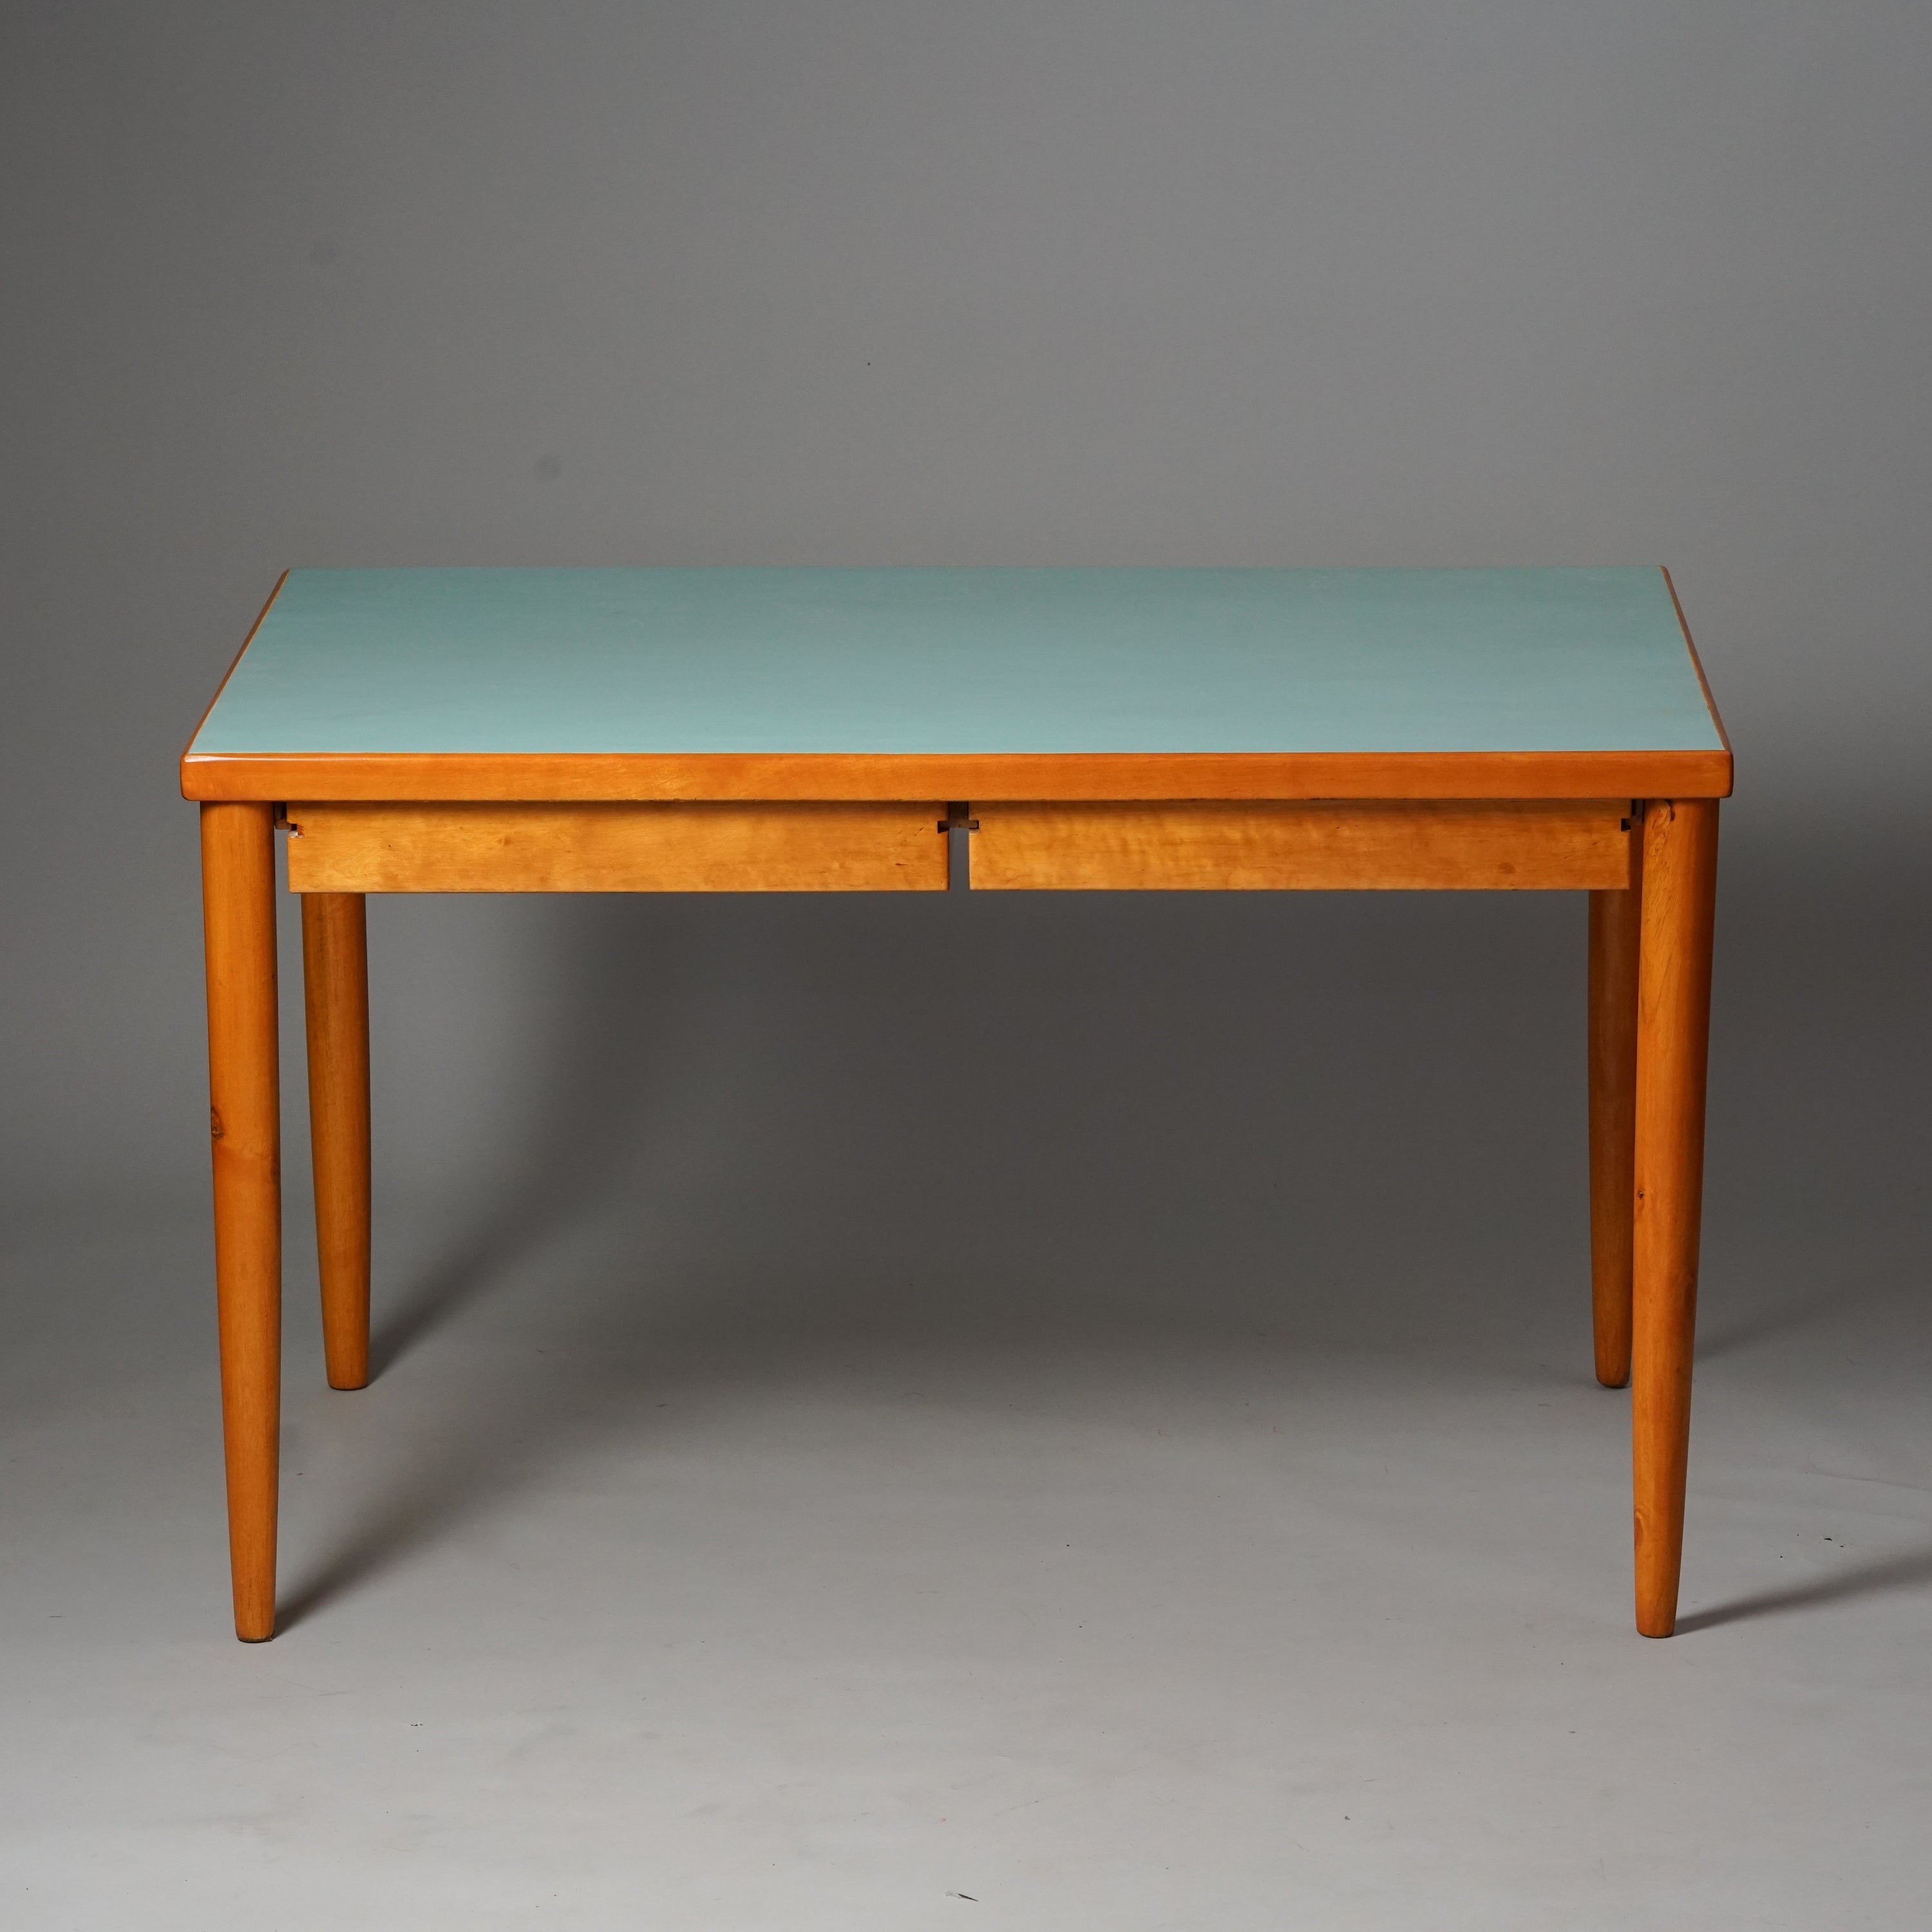 Pöydän työtaso on maalattu vaaleansiniseksi, muuten pöytä on puun värinen. Sisältää kaksi vetolaatikkoa.